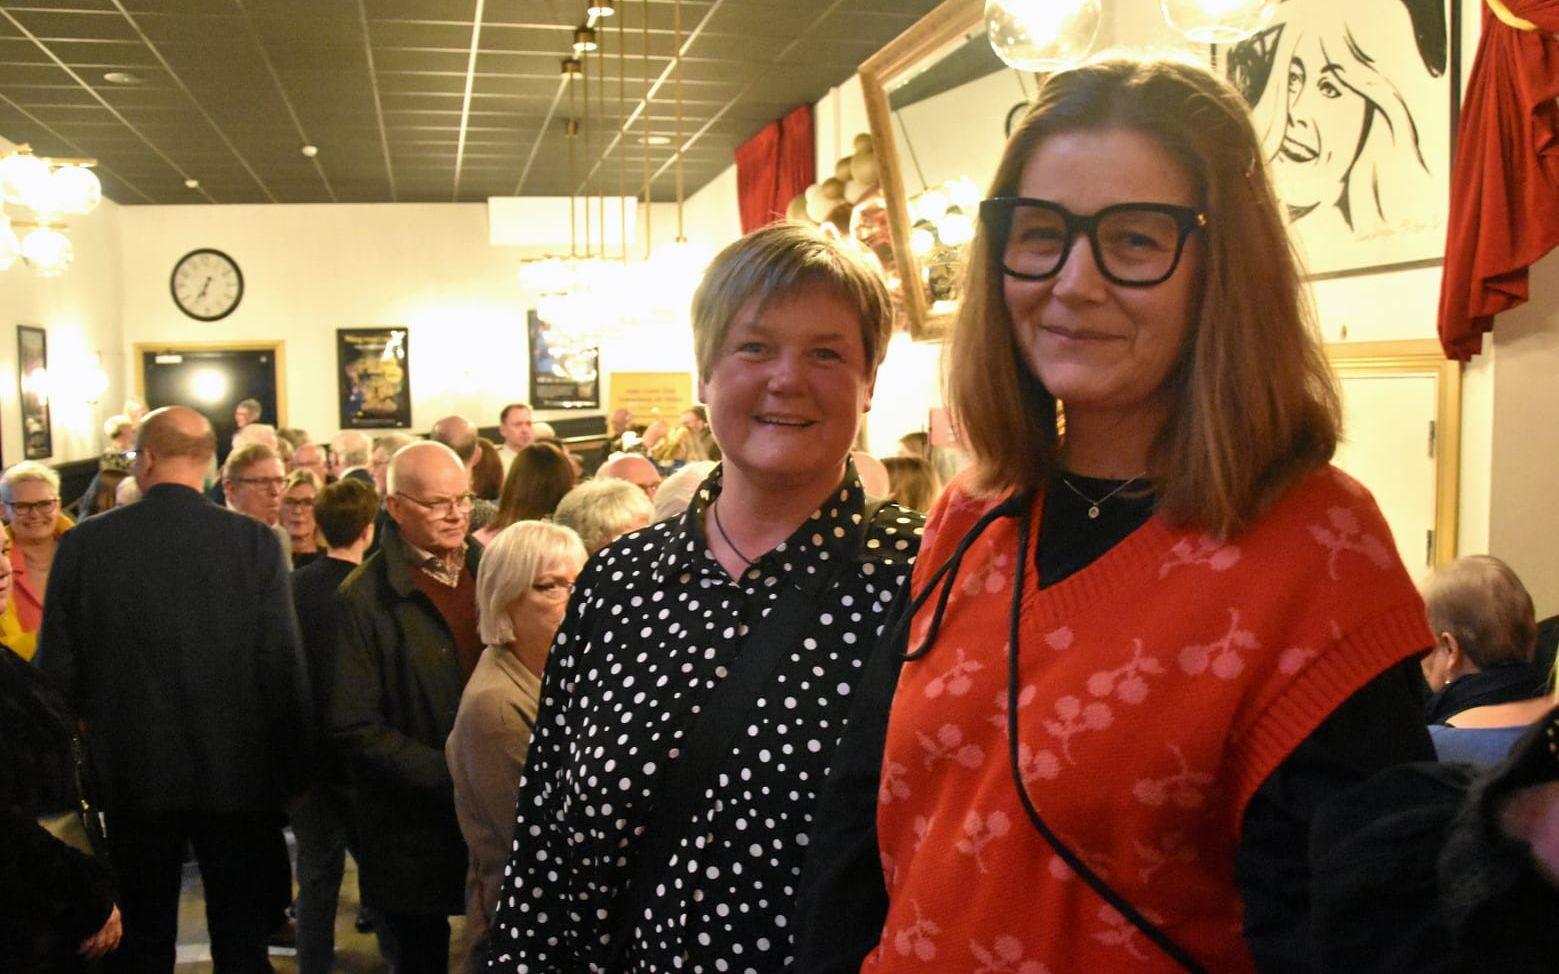 Systrarna Annica Svensson och Maria Karlsson är på konserten med sin mamma som fyllt 80 år. ”Jag hoppas få höra sånger från Så som i himmelen och Kristina från Duvemåla.